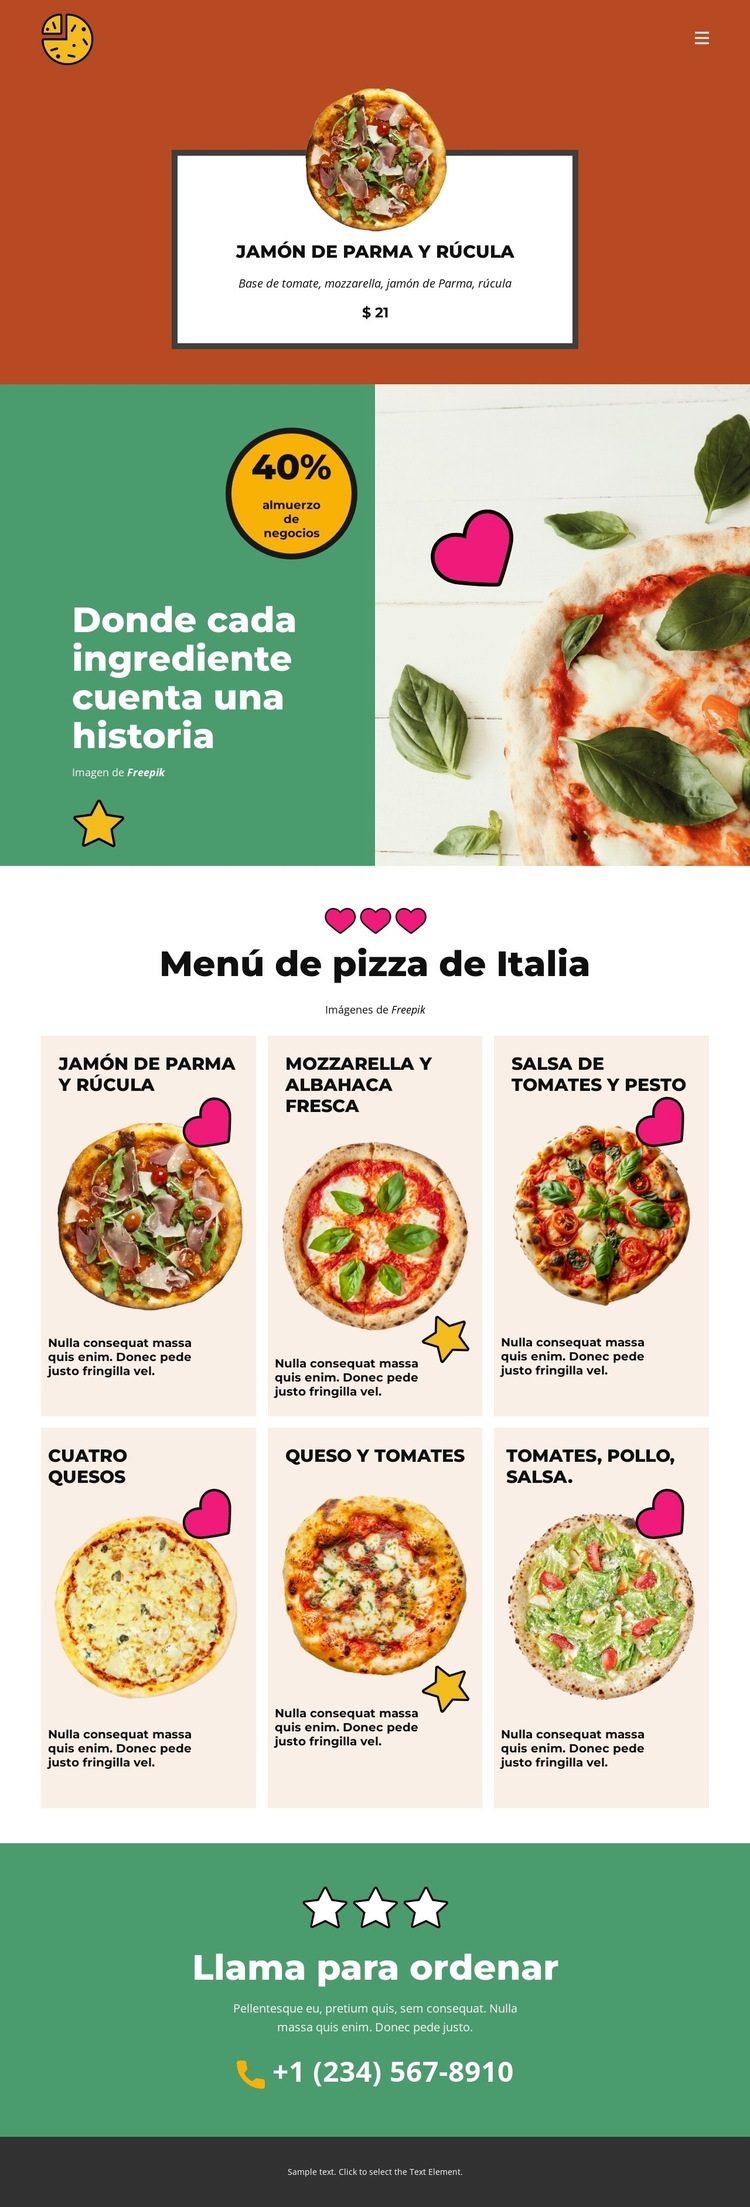 Fun Facts about Pizza Diseño de páginas web